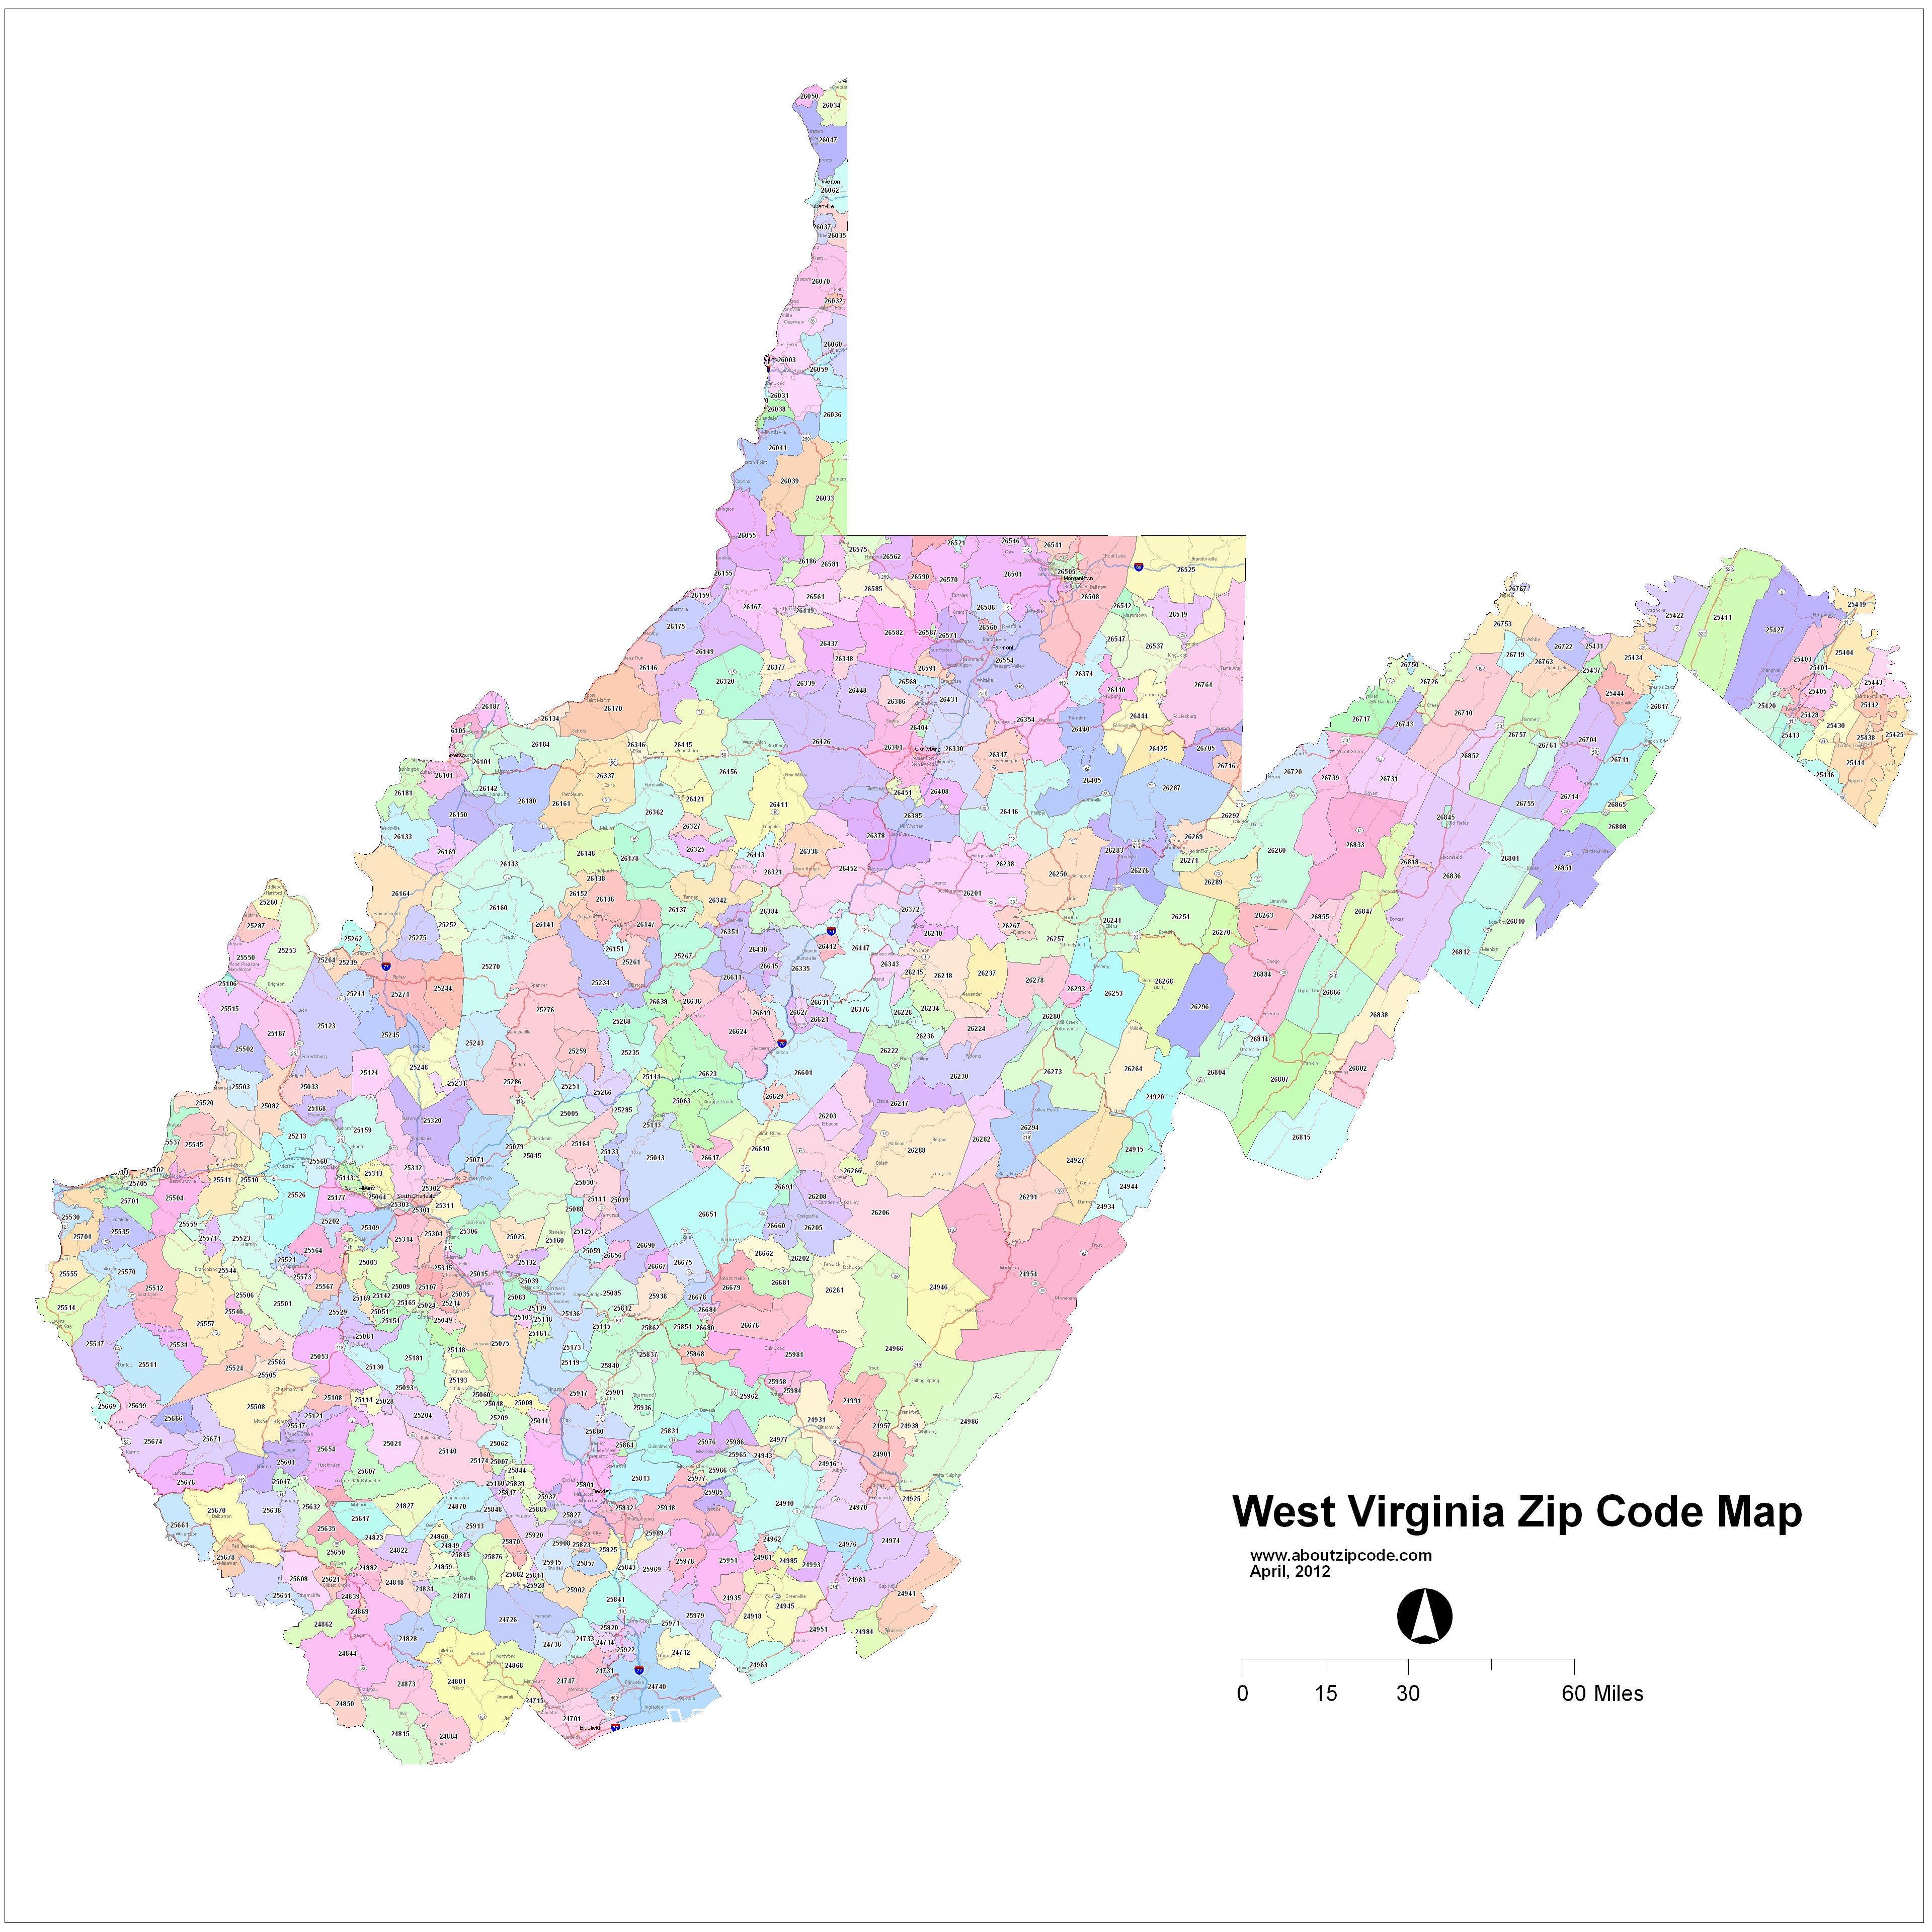 West Virginia Zip Code Map